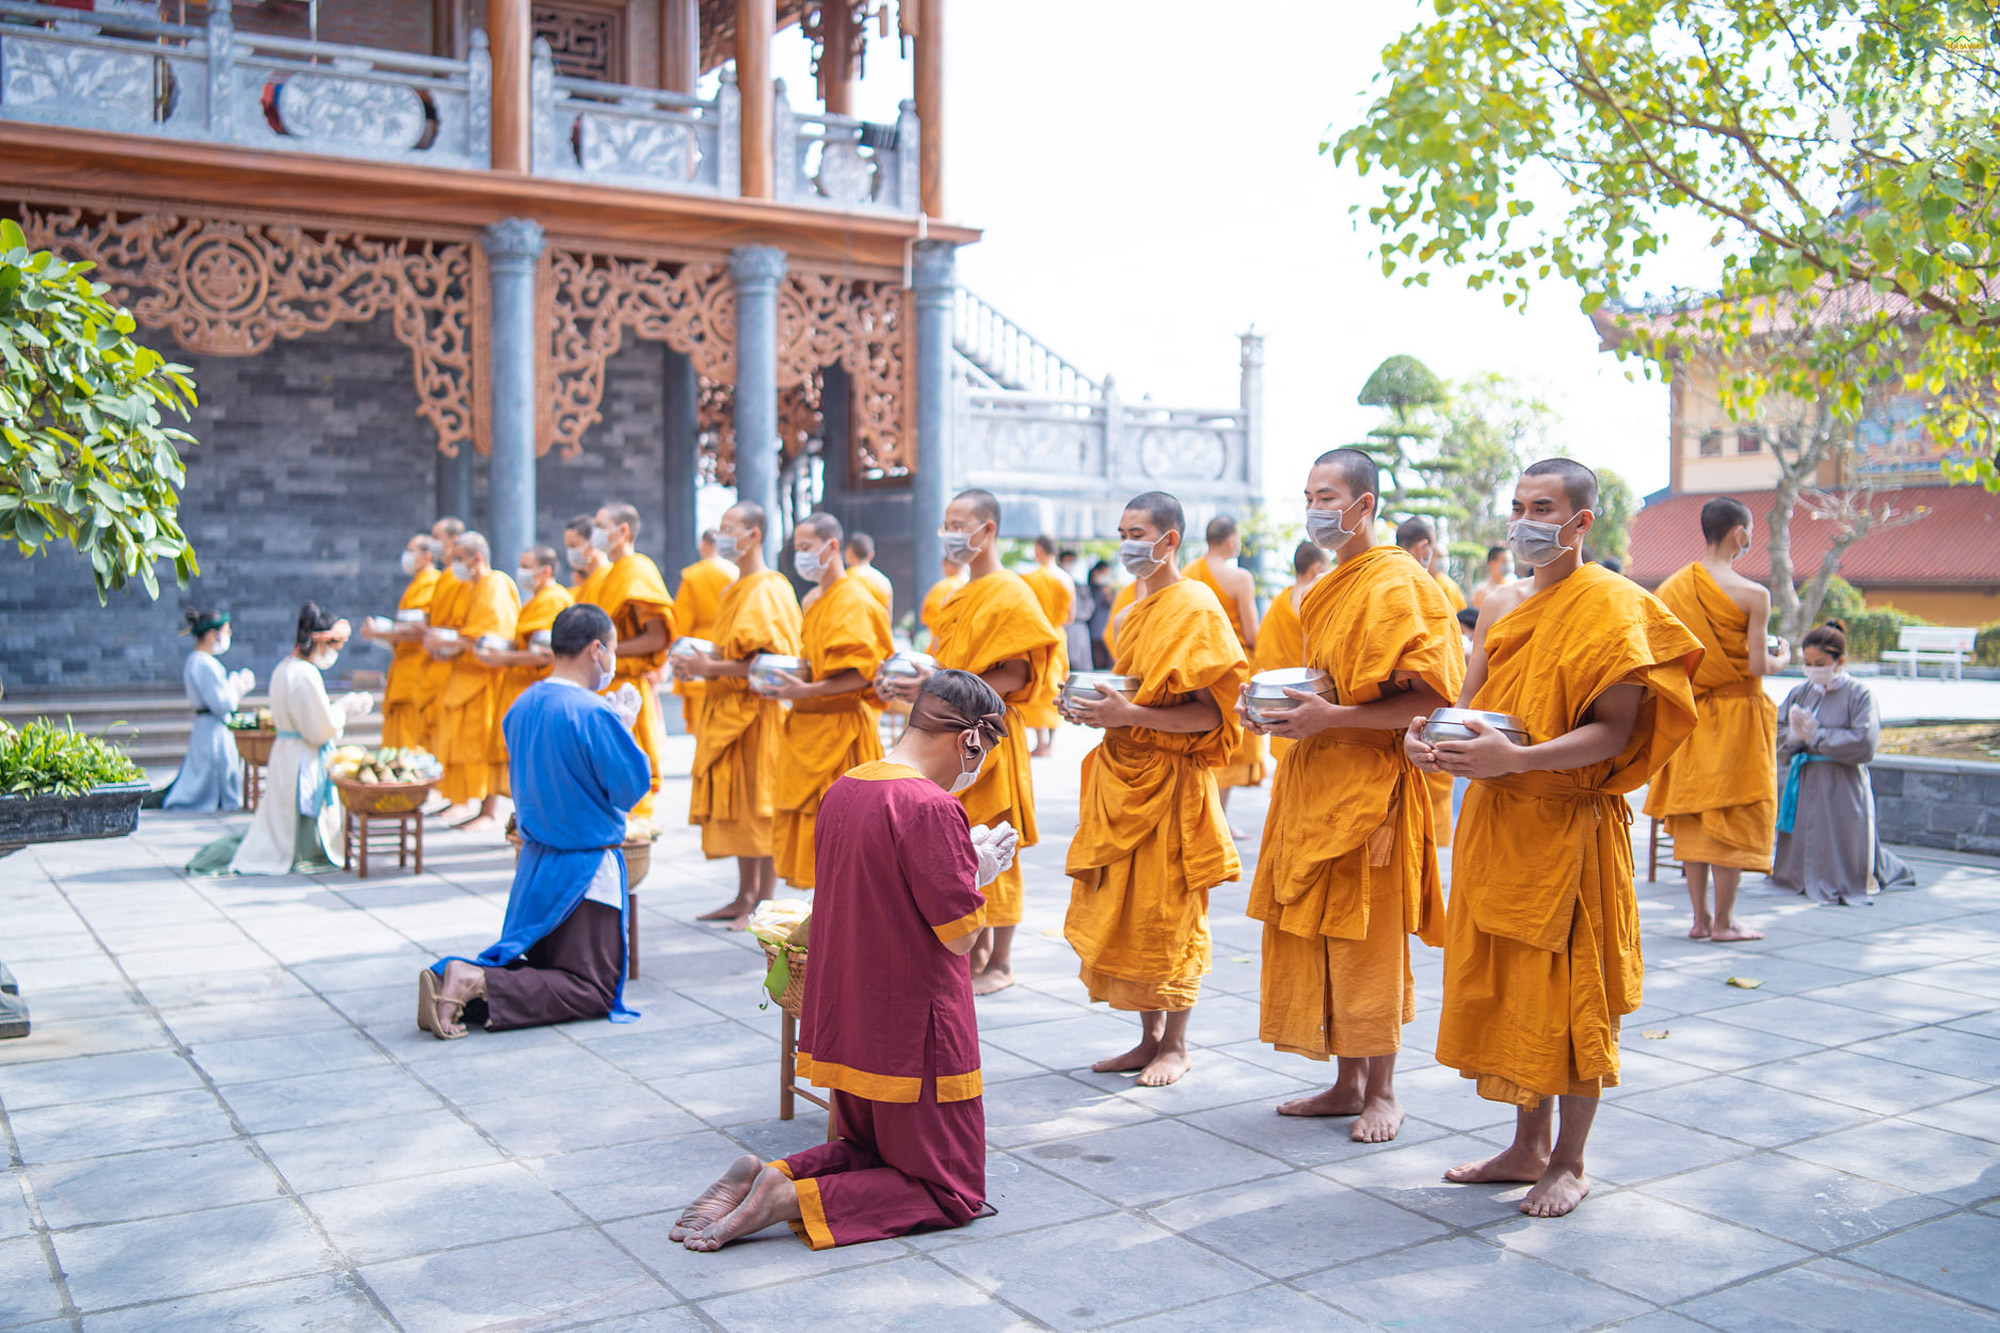   “Hóa thân” trong trang phục người dân thời Trần, các Phật tử chắp tay cung kính đối với Tăng đoàn chùa Ba Vàng - những bậc đang thực hành hạnh đầu đà nơi non thiêng Thành Đẳng.  